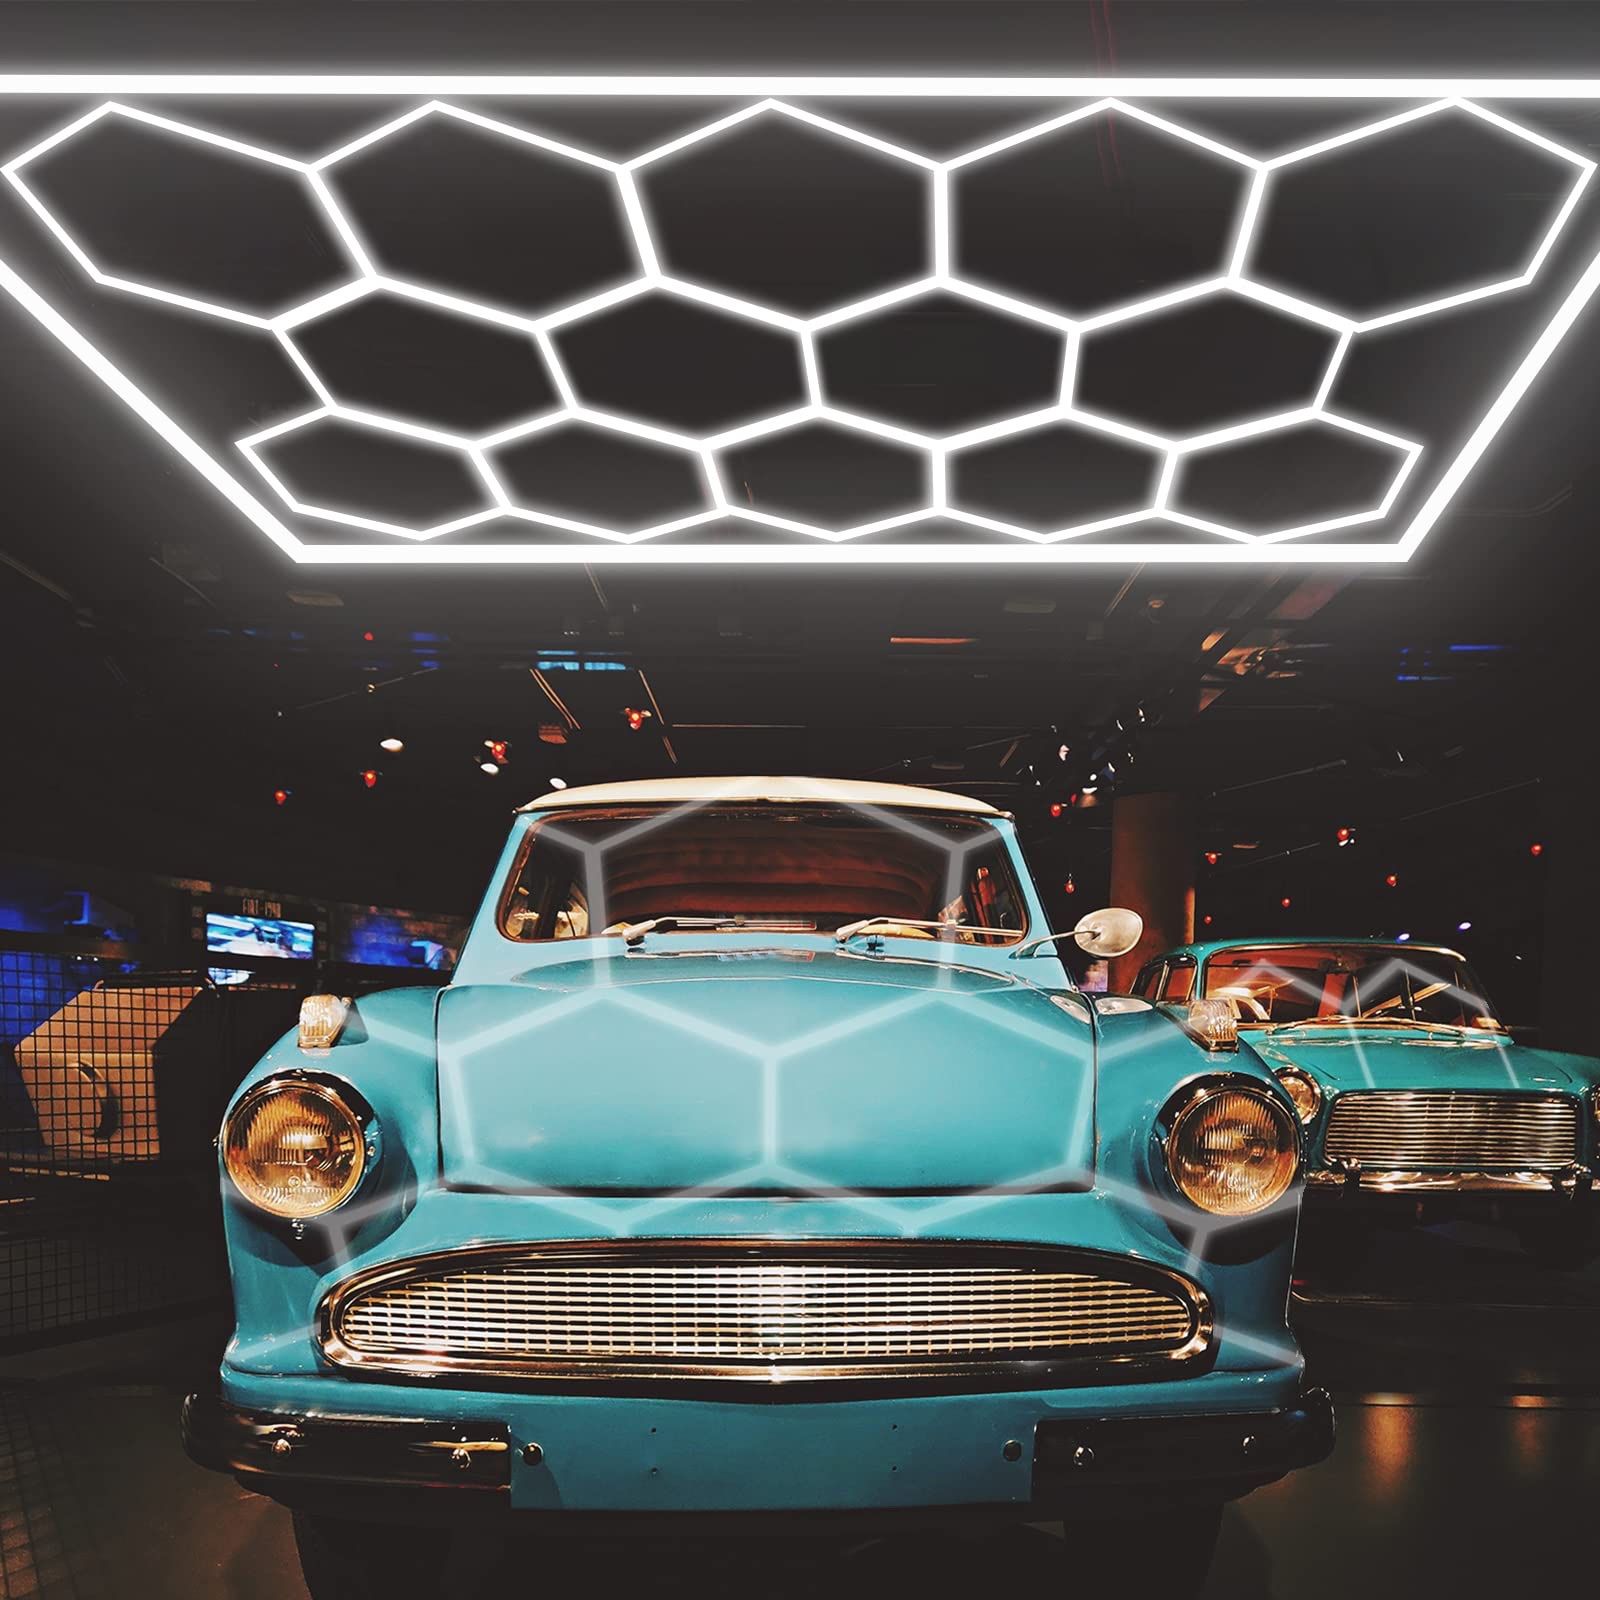 LZHOME LED Hexagon Garage Light - Super Bright 900W 108000LM Car Detailing Shop LED Ceiling Lights Hexagon Lighting System for Home Gym Garage Worksho